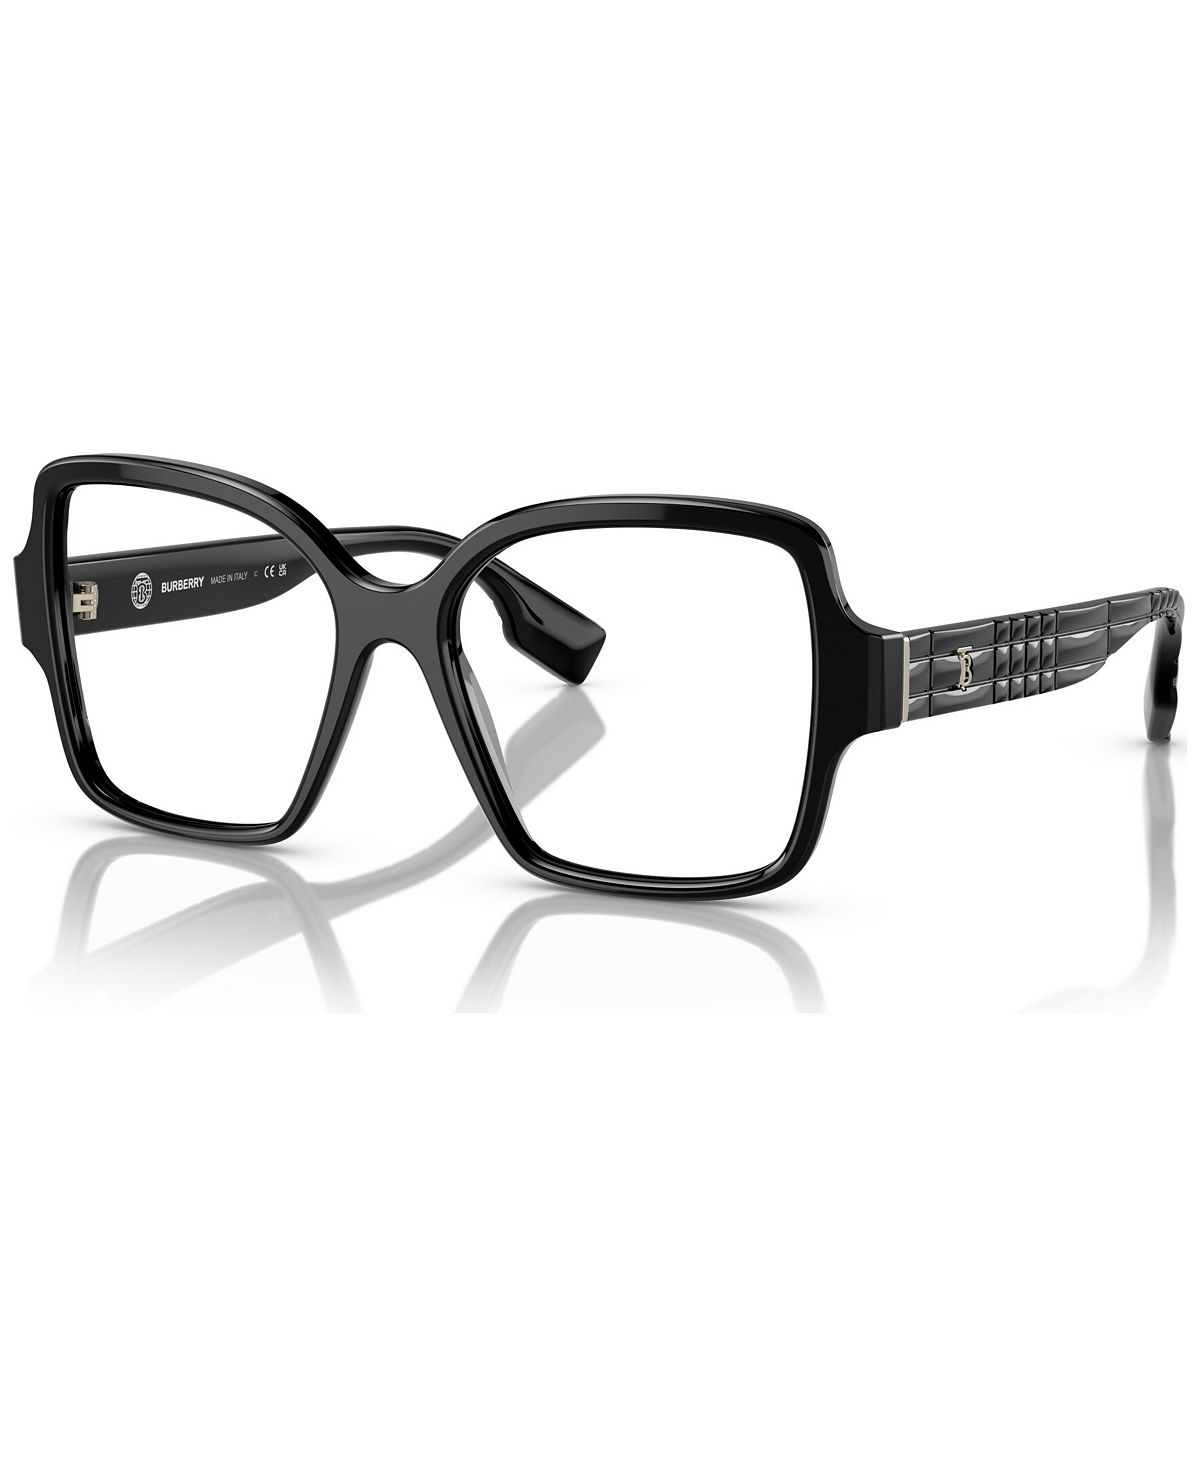 Женские квадратные очки, BE2374 54 Burberry, черный женские квадратные очки be2376 52 burberry черный